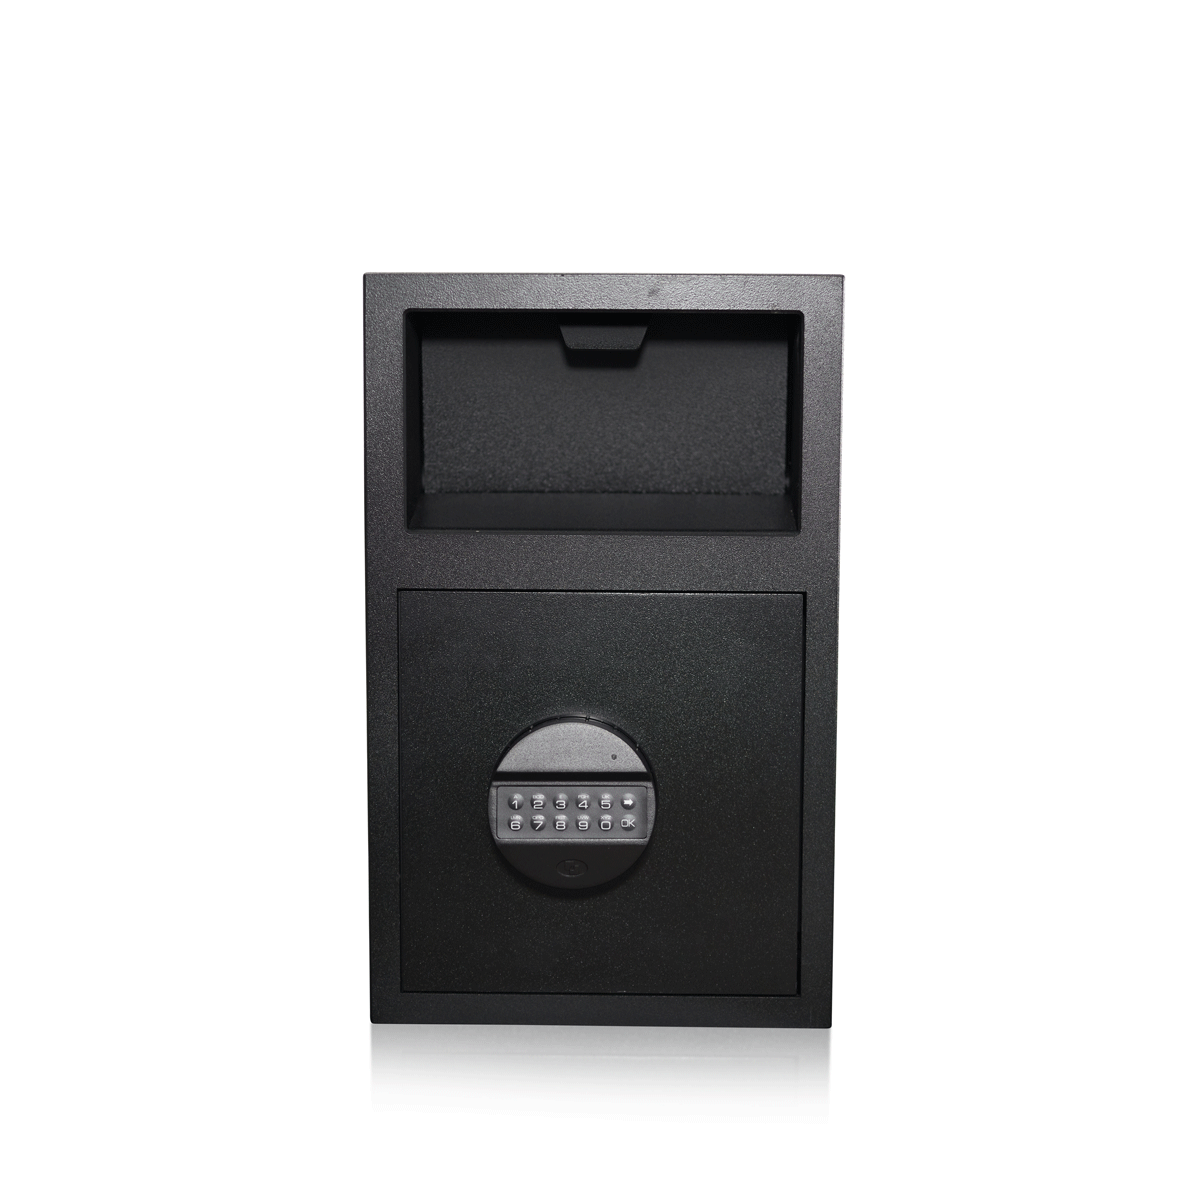 Caja de Depósito con Ranura de Depósito | Nivel de Seguridad B | Cerradura VDS Clase 2 | Código PIN | Fabricado en la UE